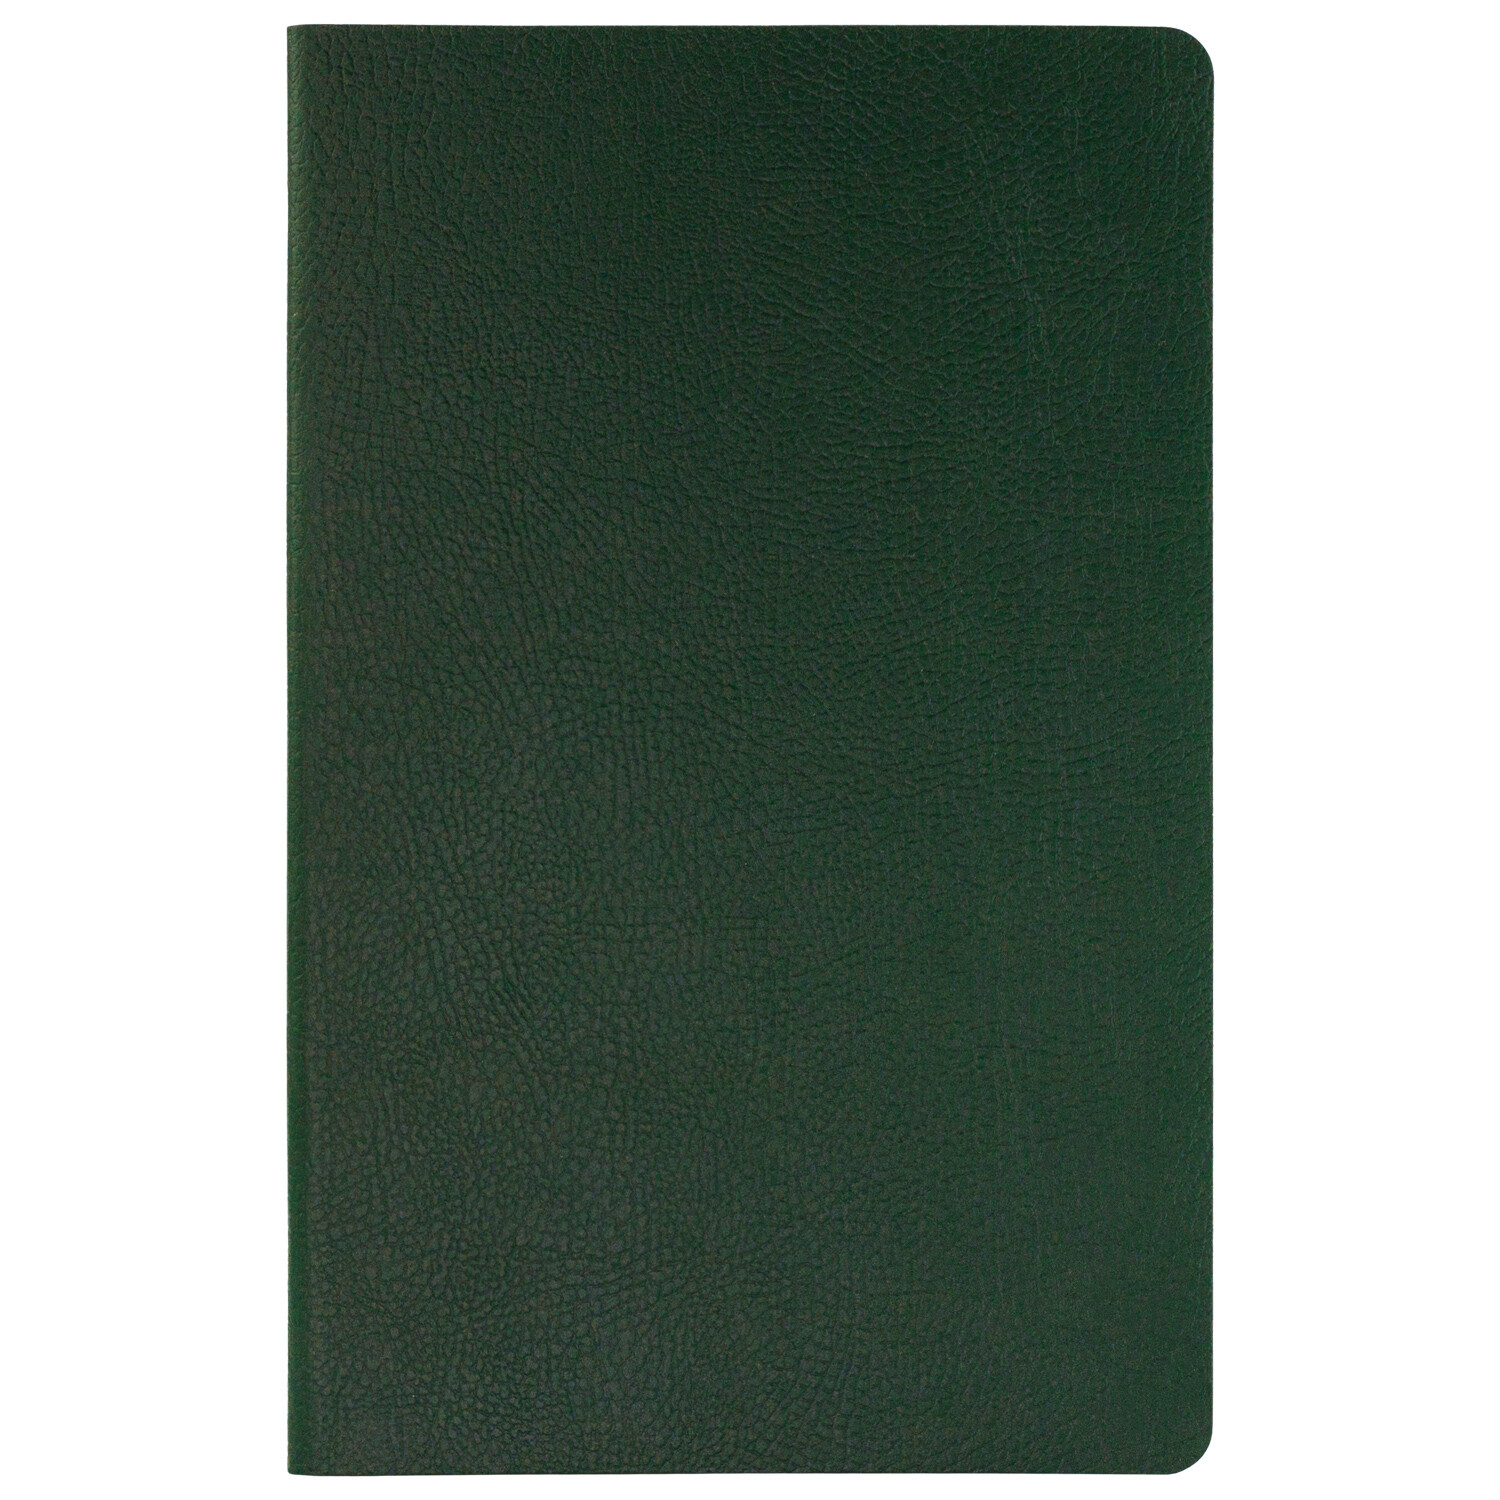 Ежедневник Slimbook Marseille недатированный без печати, зеленый (Sketchbook)